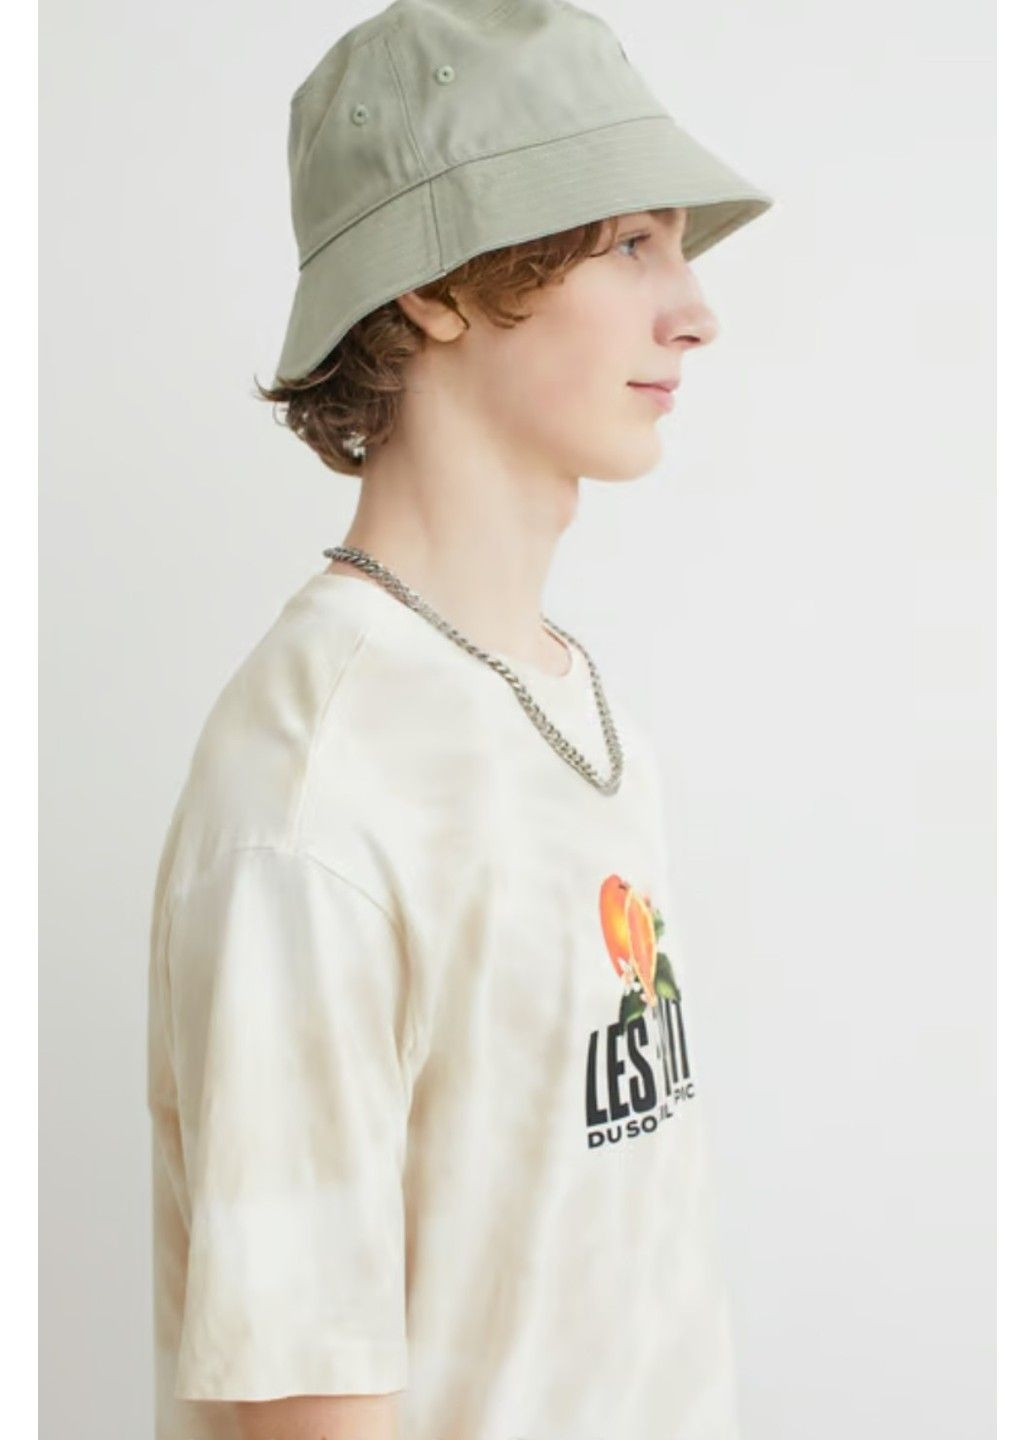 Светло-бежевая мужская футболка с принтом свободного кроя н&м (56756) xxl светло-бежевая H&M